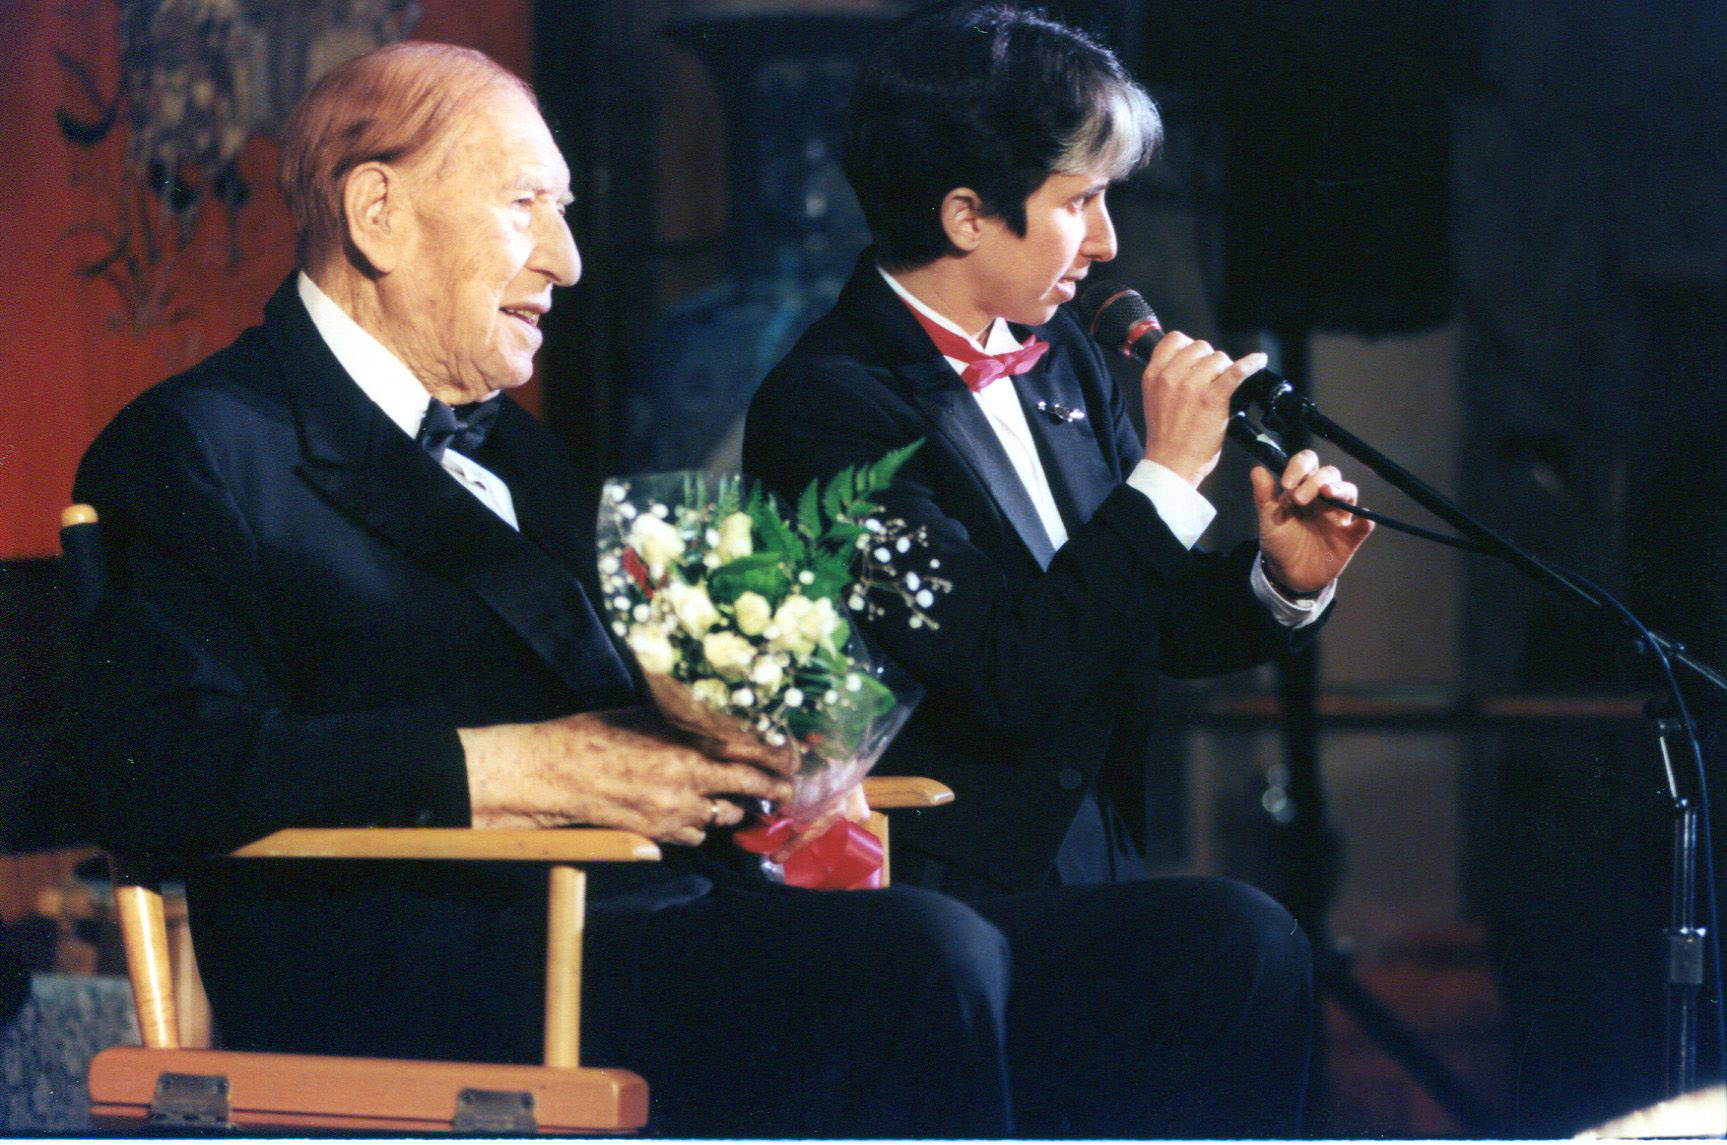 Henny Youngman and Lisa Geduldig, 1997